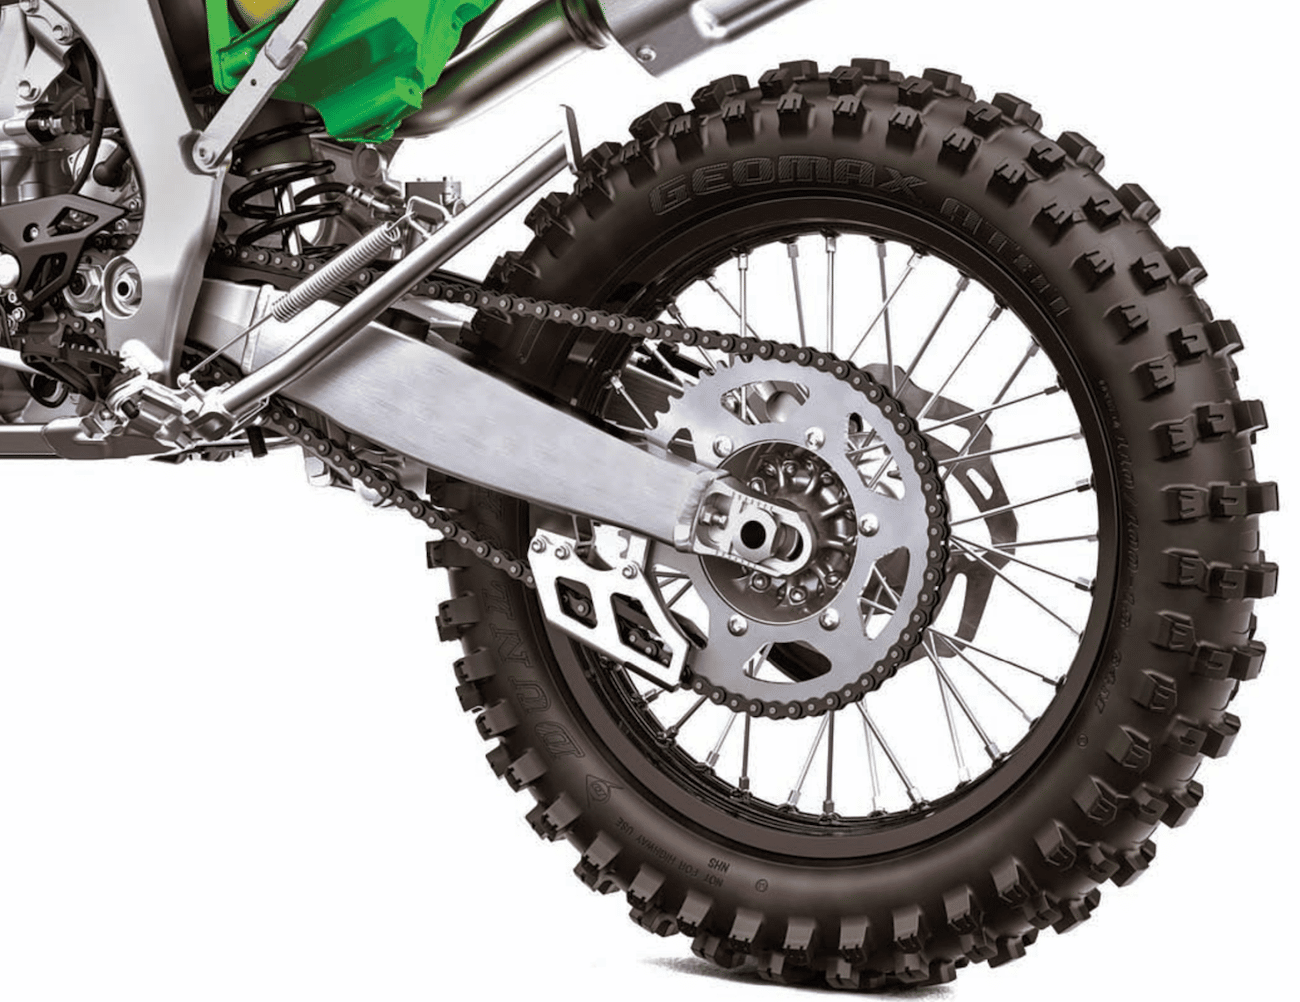 ASKTHE MXPERTS: ROUES 18 POUCES EN SUPERCROSS - Motocross Action Magazine